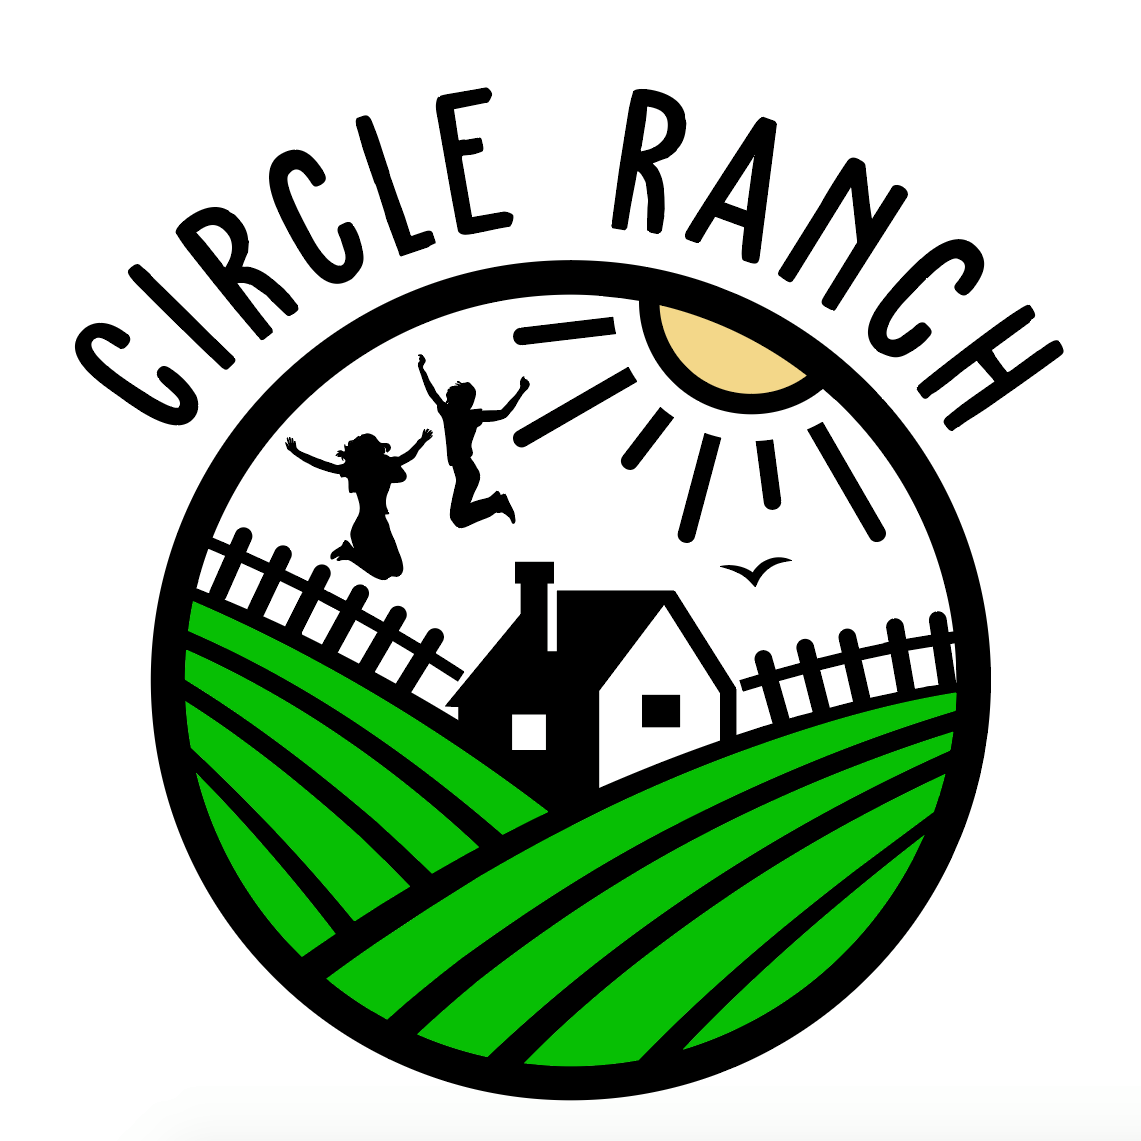 Circle Ranch new logo.png